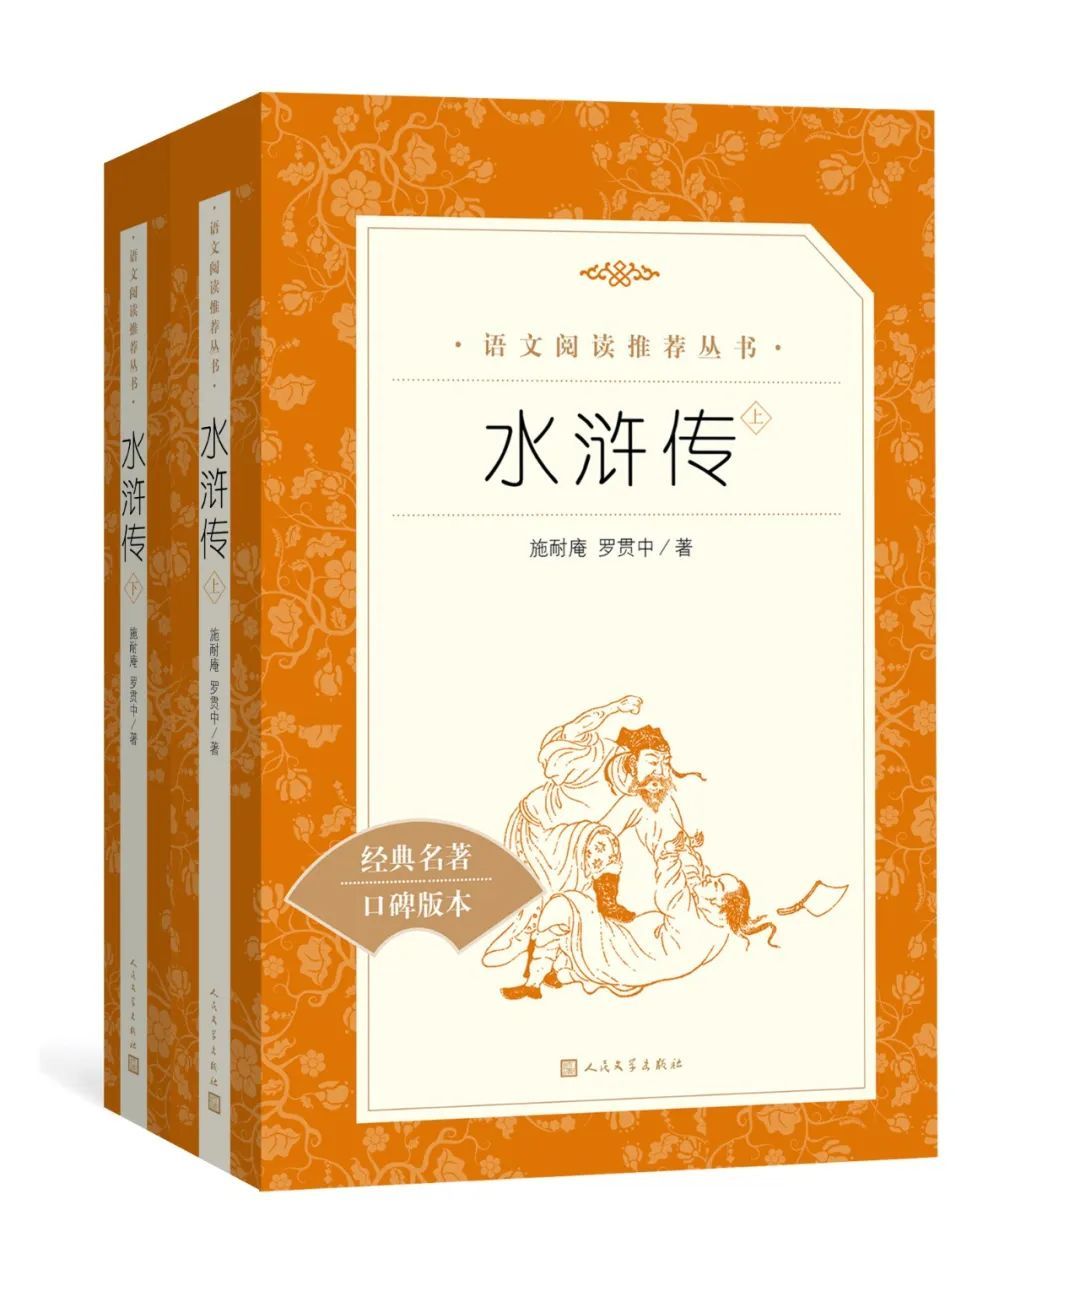 人民文学出版社《水浒传》